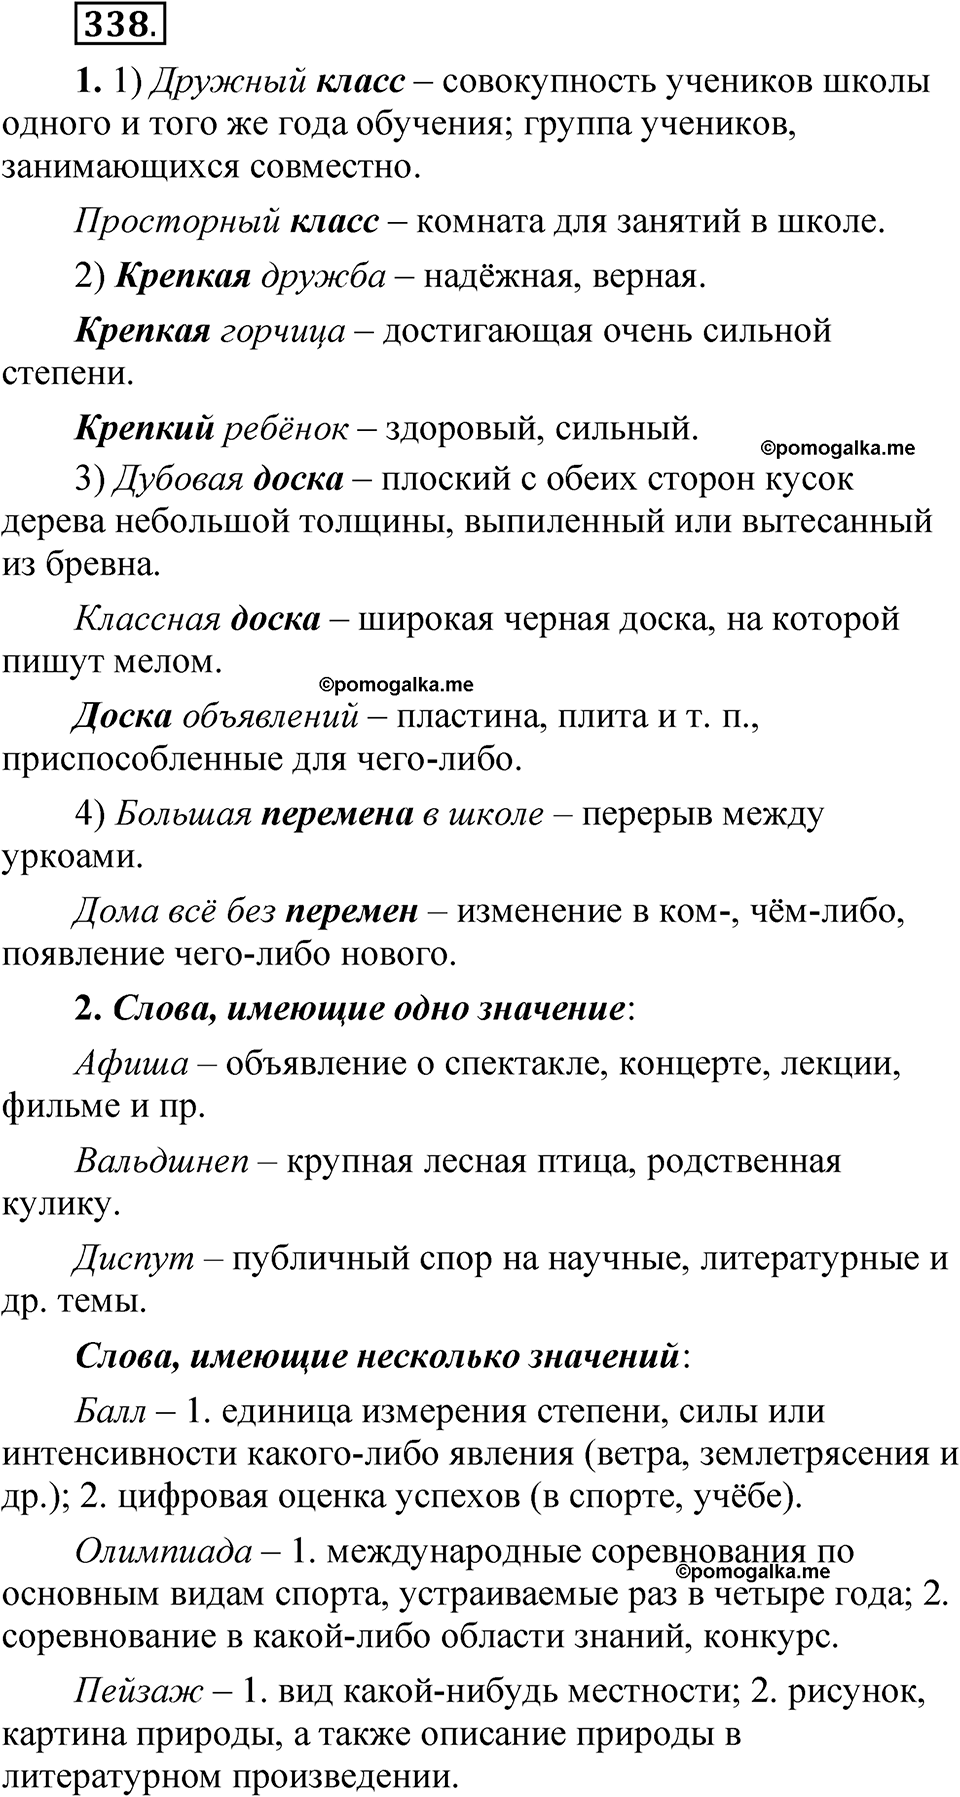 страница 242 упражнение 338 русский язык 5 класс Быстрова, Кибирева 1 часть 2021 год